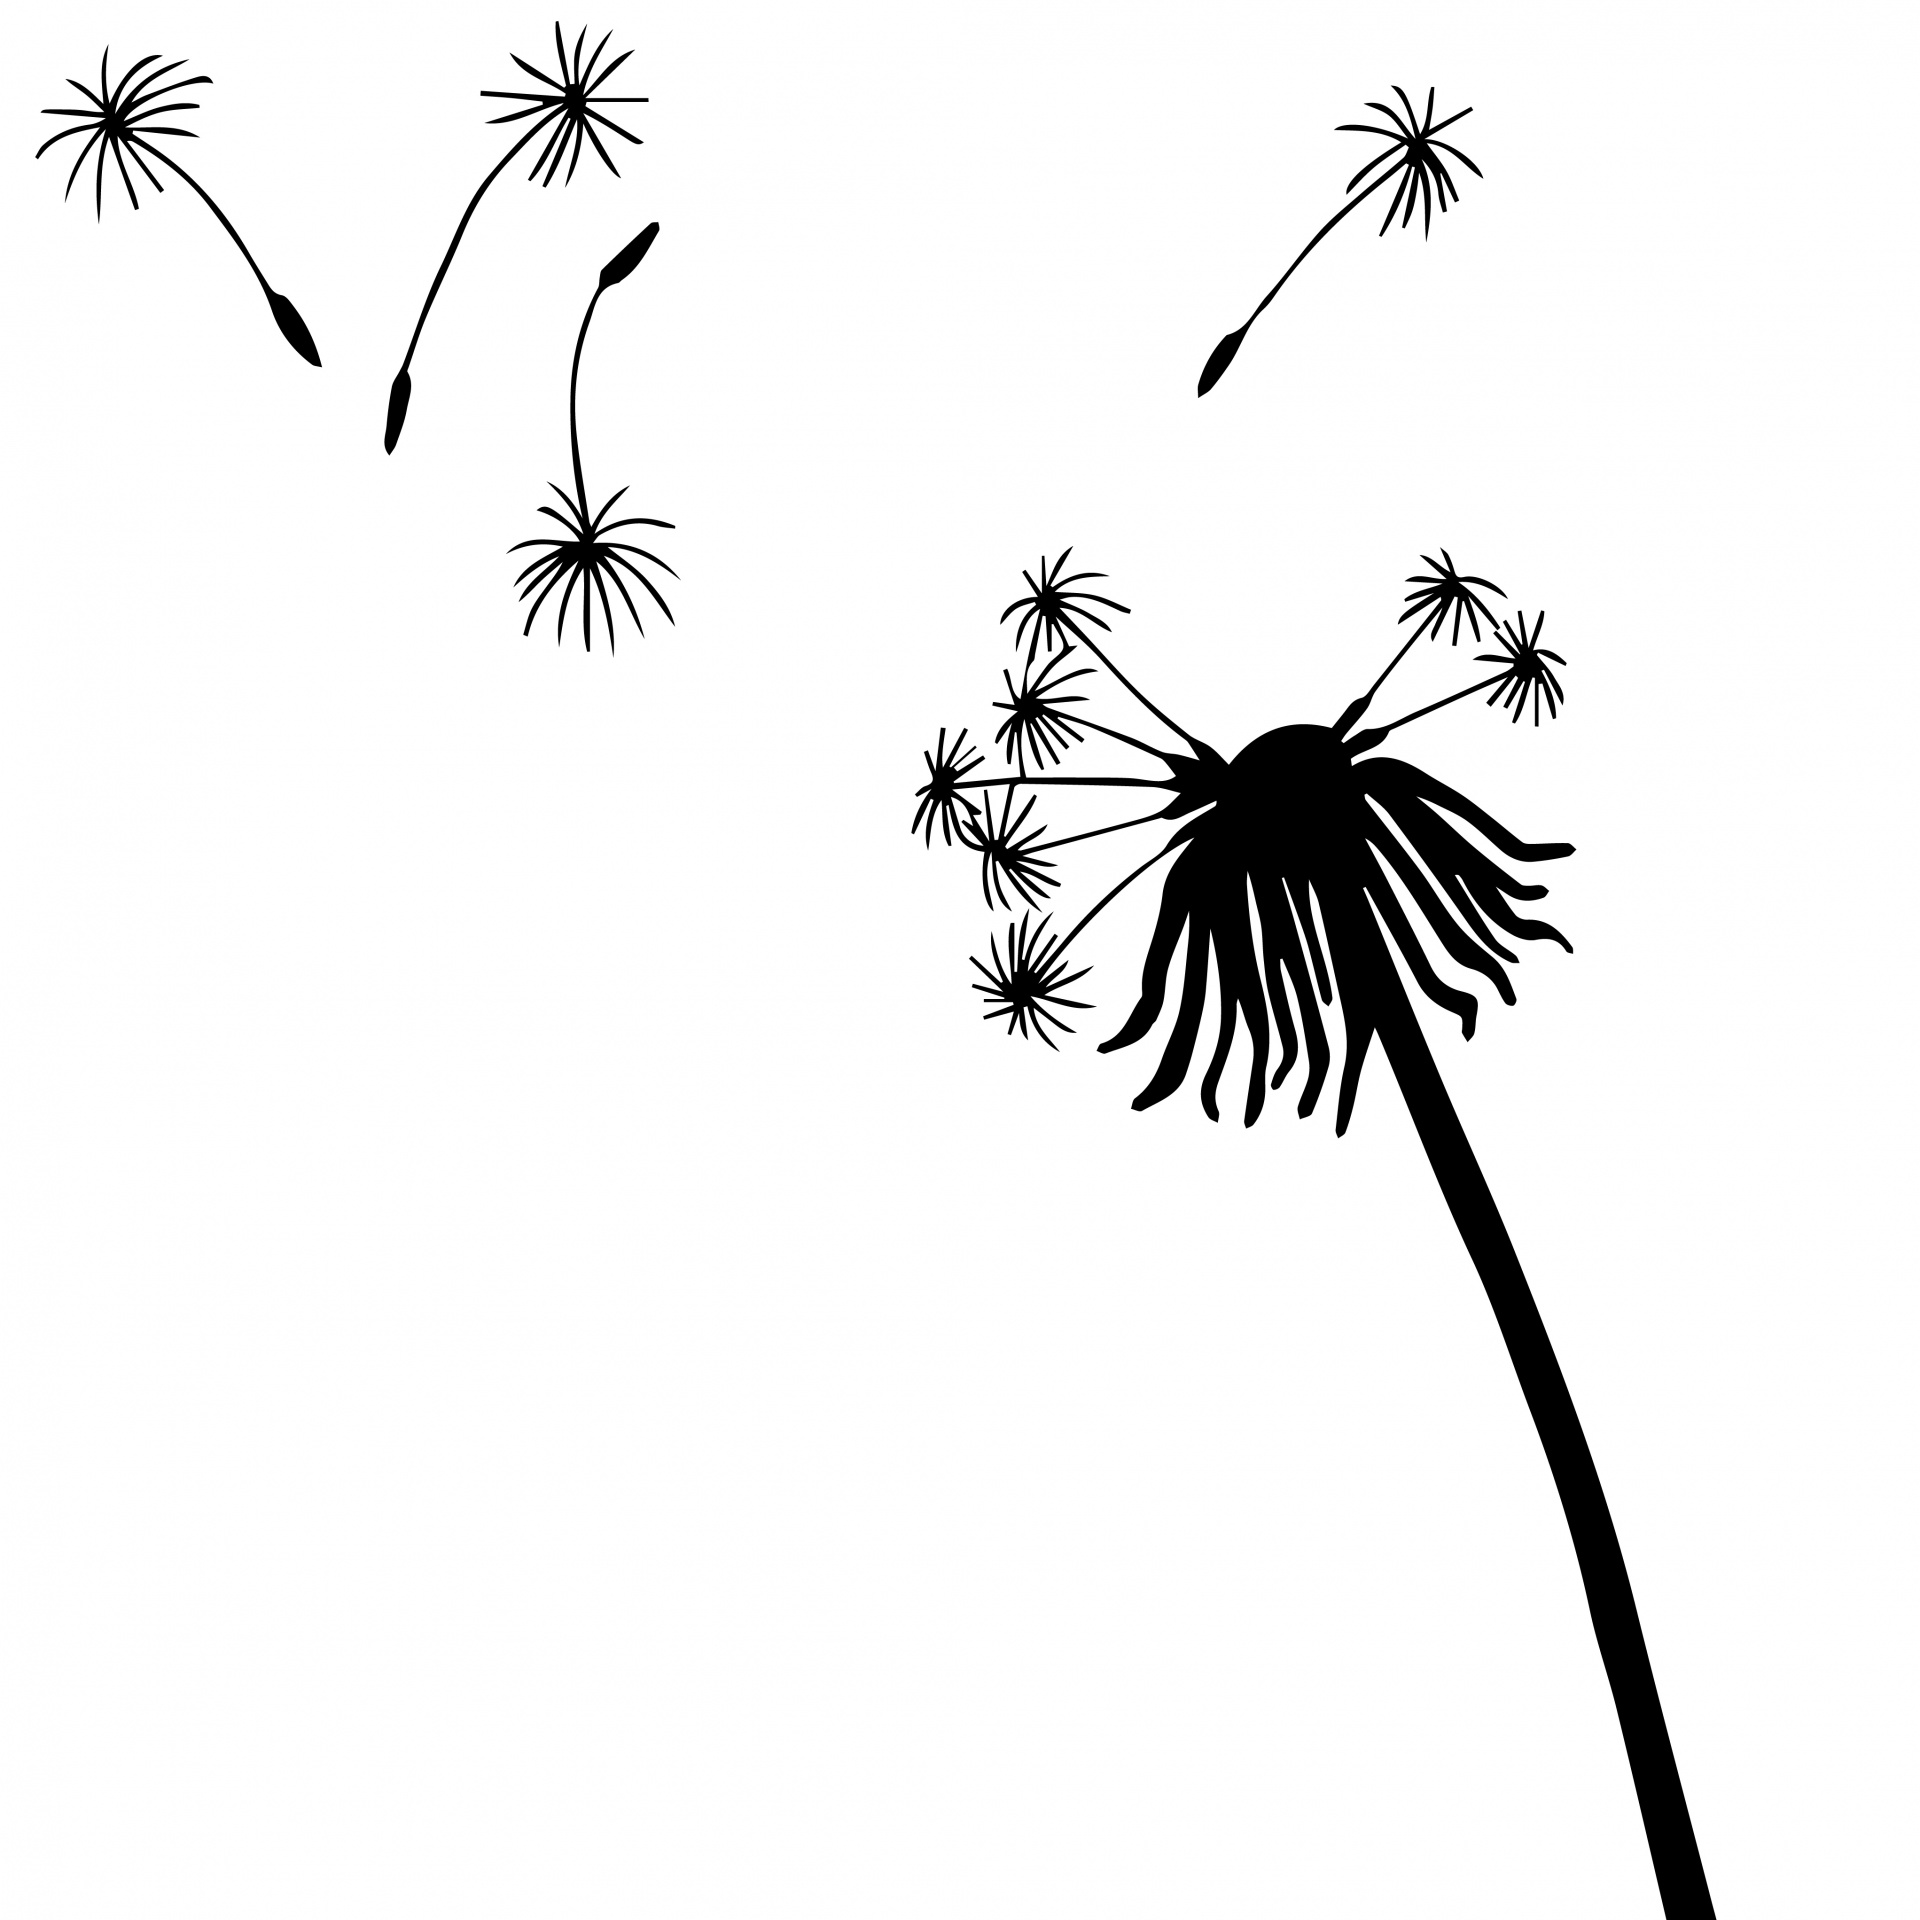 dandelion illustration vector free download